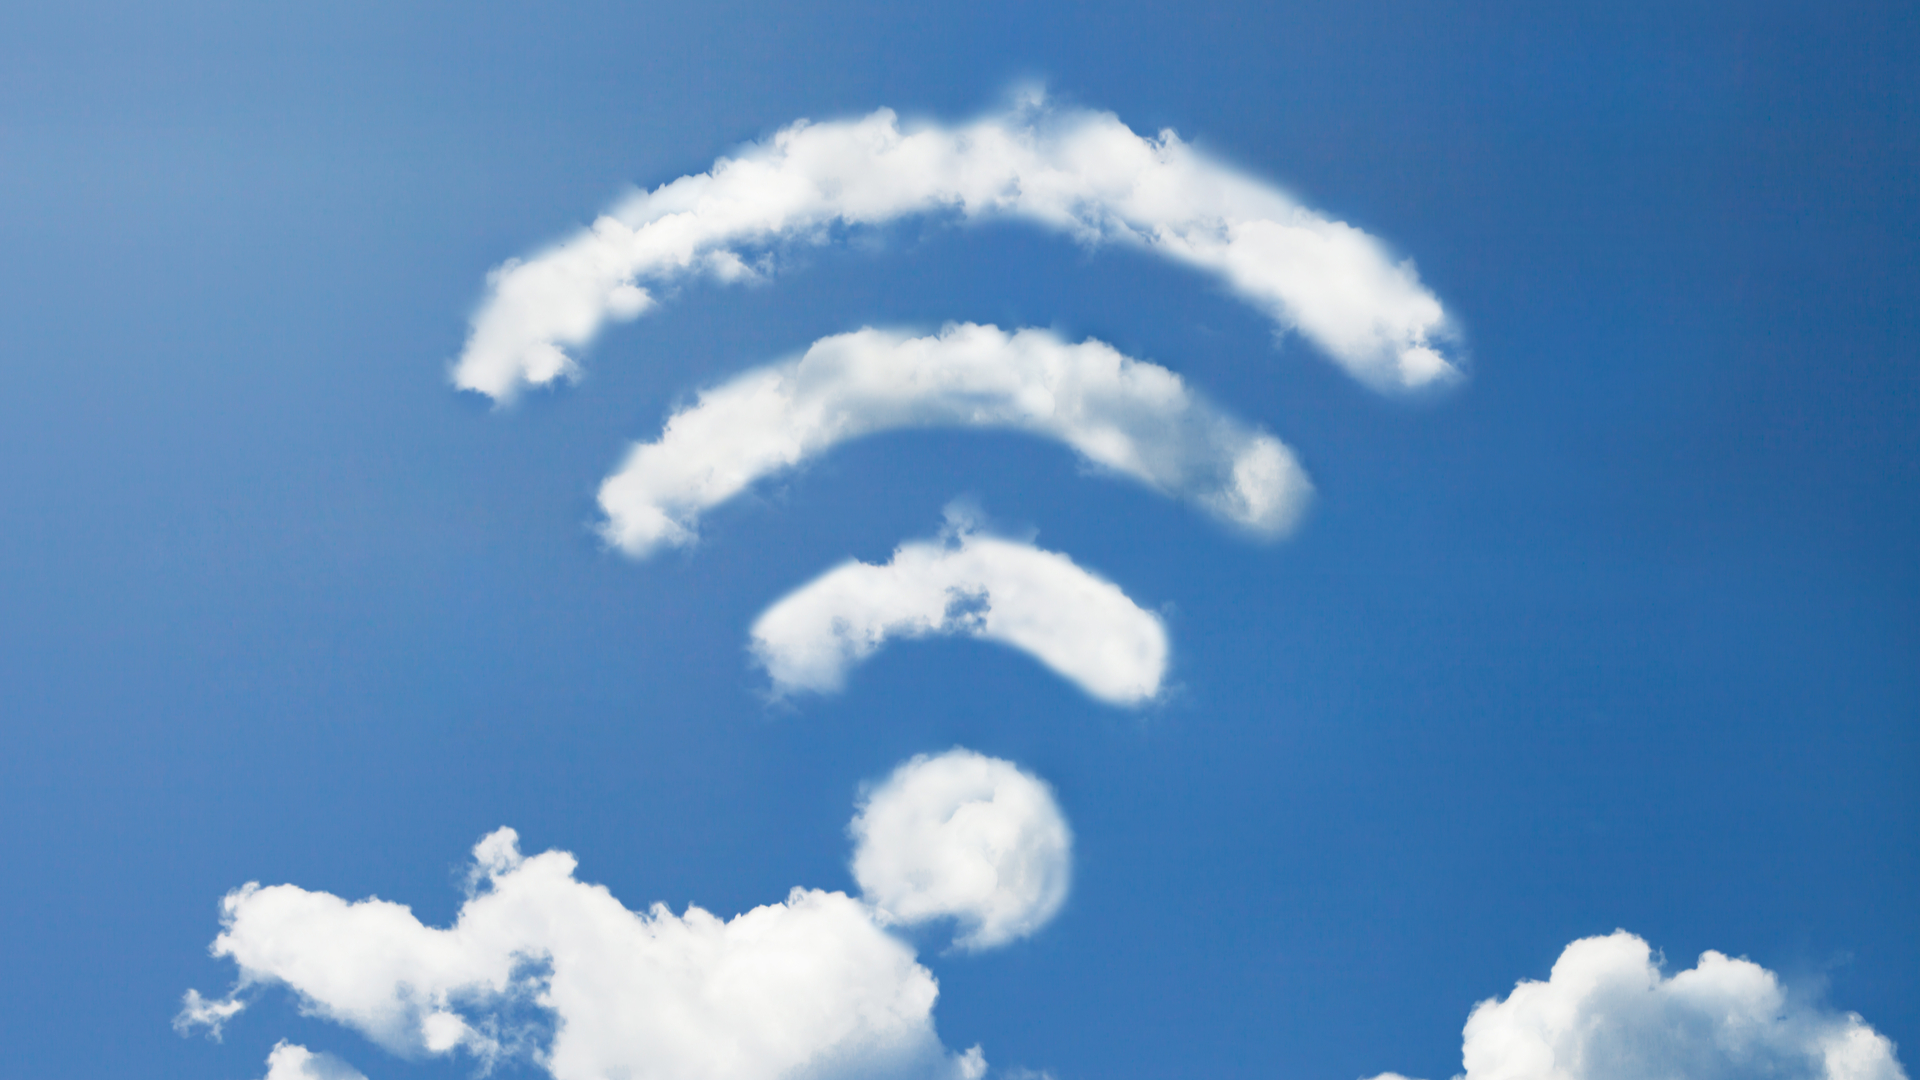 Ungkapkan dunia nirkabel di sekitar Anda dengan alat pemindai Wi-Fi terbaik